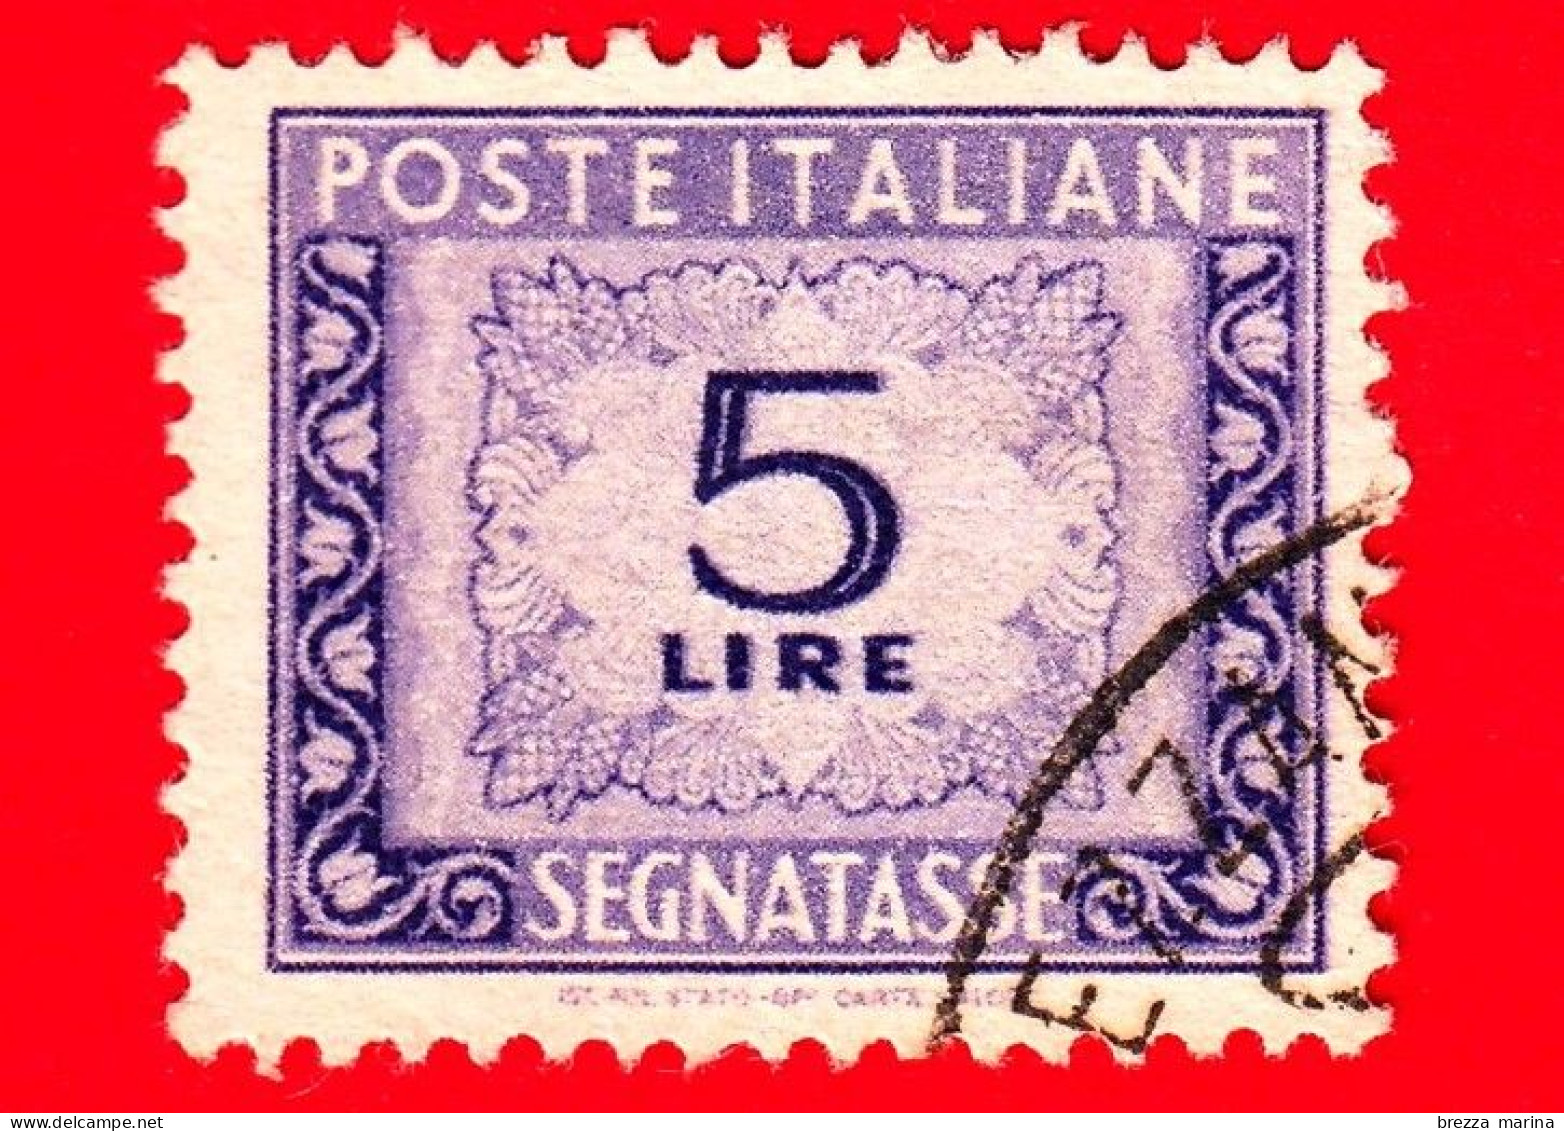 ITALIA - Usato - 1947 - Cifra E Decorazioni, Filigrana Ruota - Segnatasse - 5 L. • Cifra E Decorazioni - Postage Due